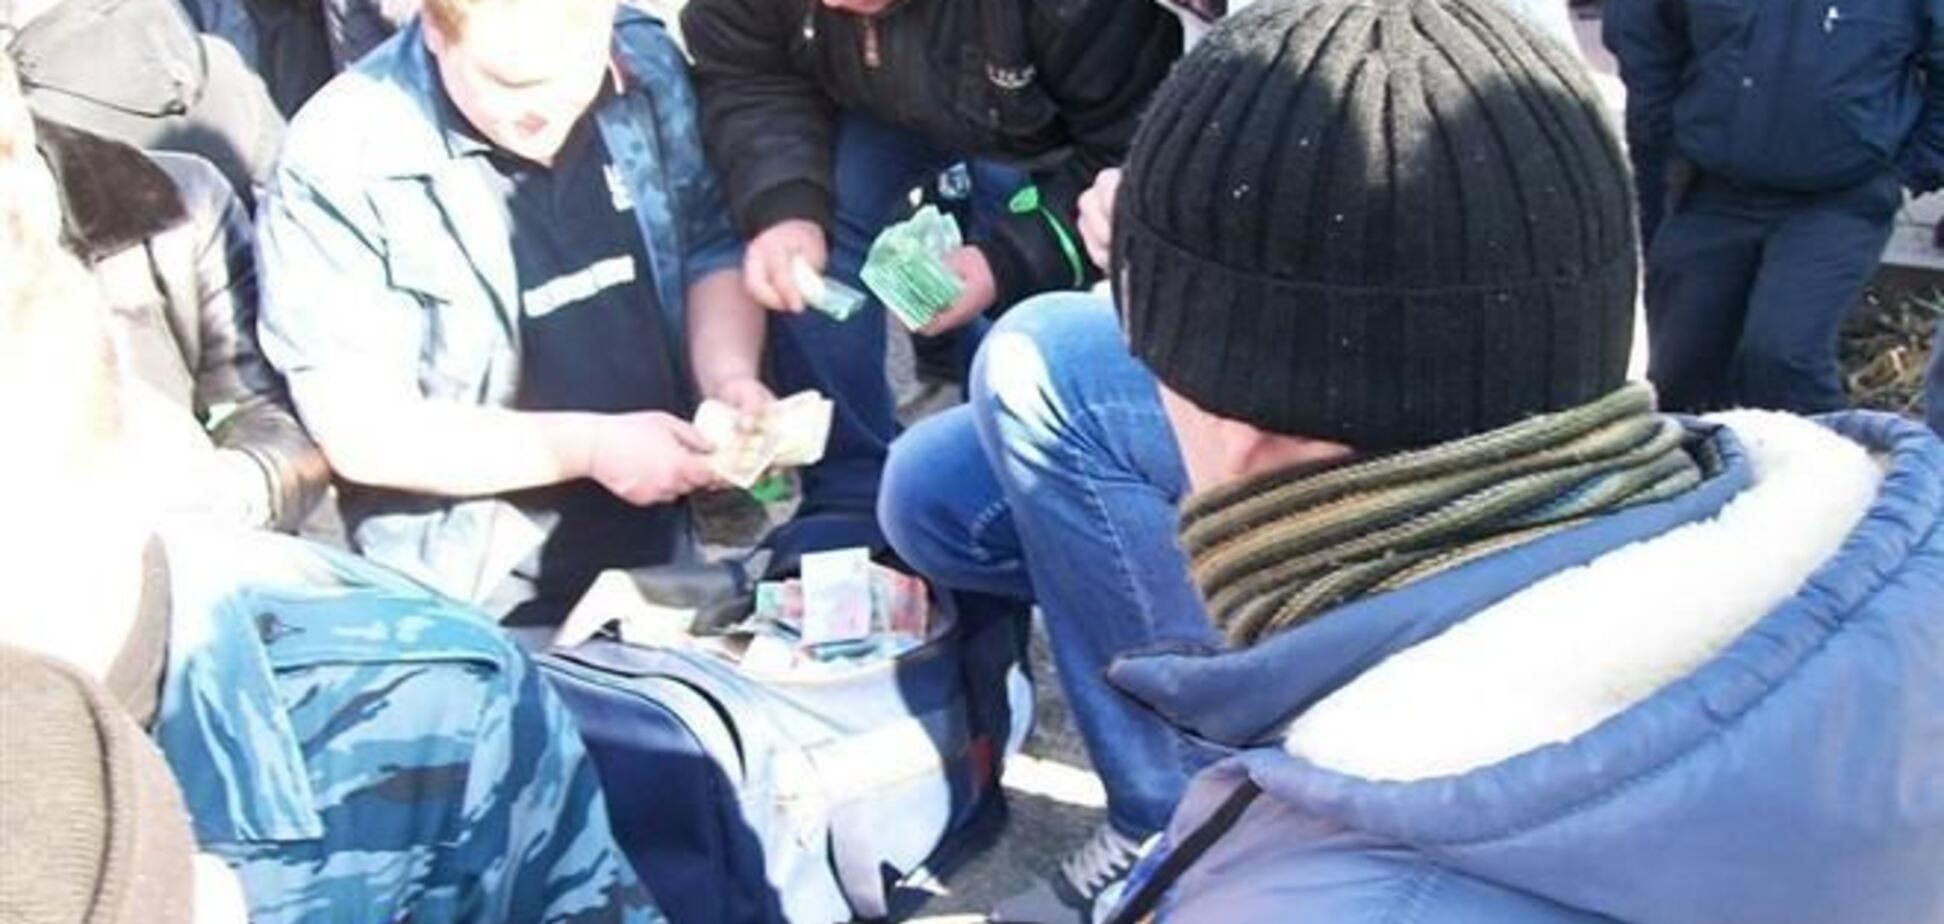 Пророссийские активисты на митинге в Луганске делили сумку с деньгами